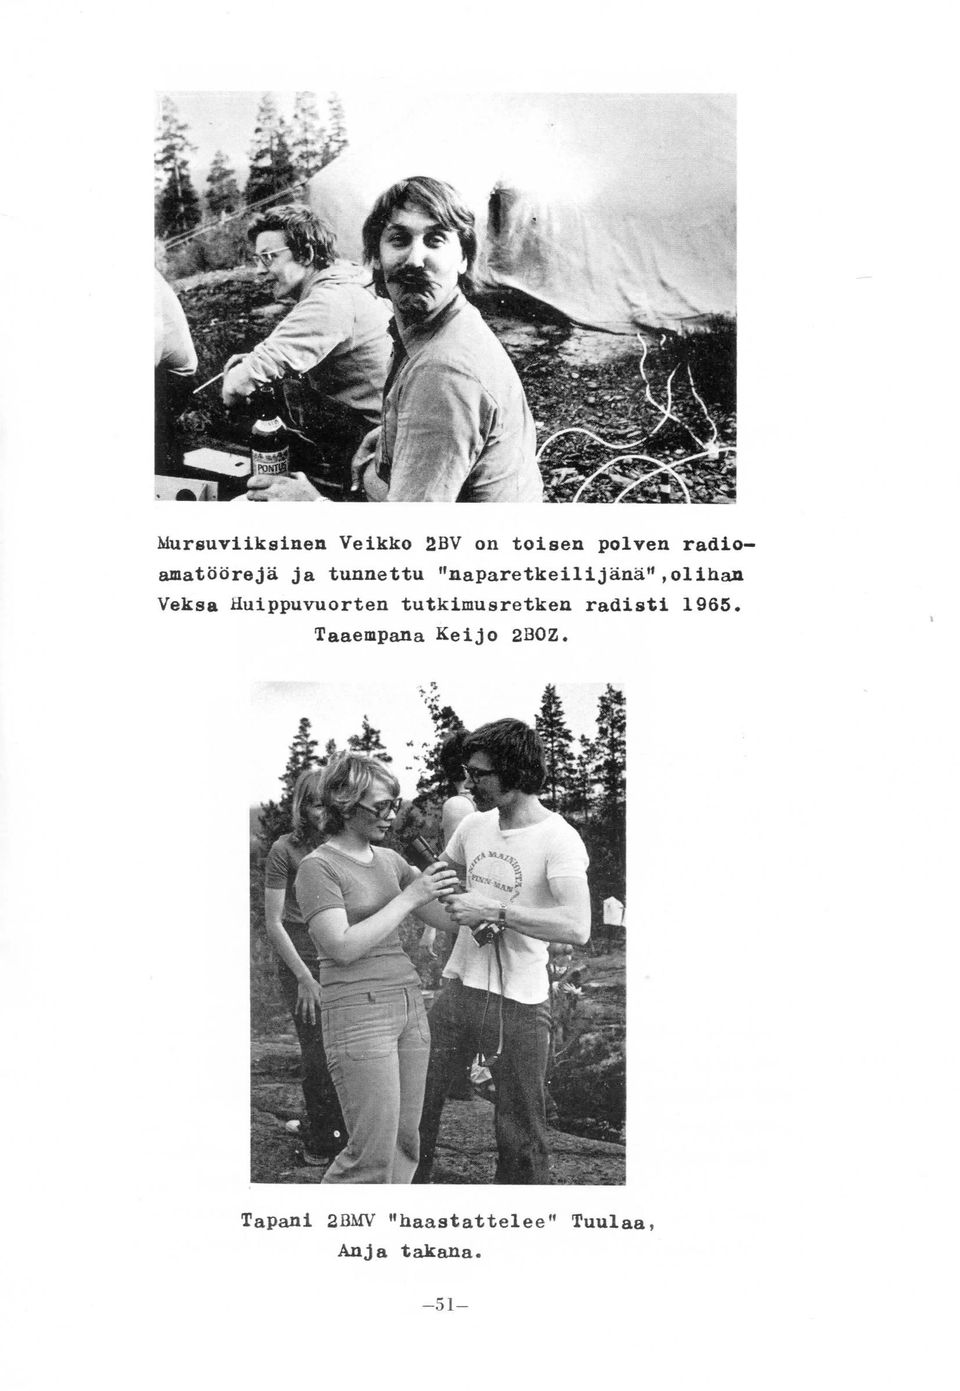 Veksa Huippuvuorten tutkimusretken radisti 1965.